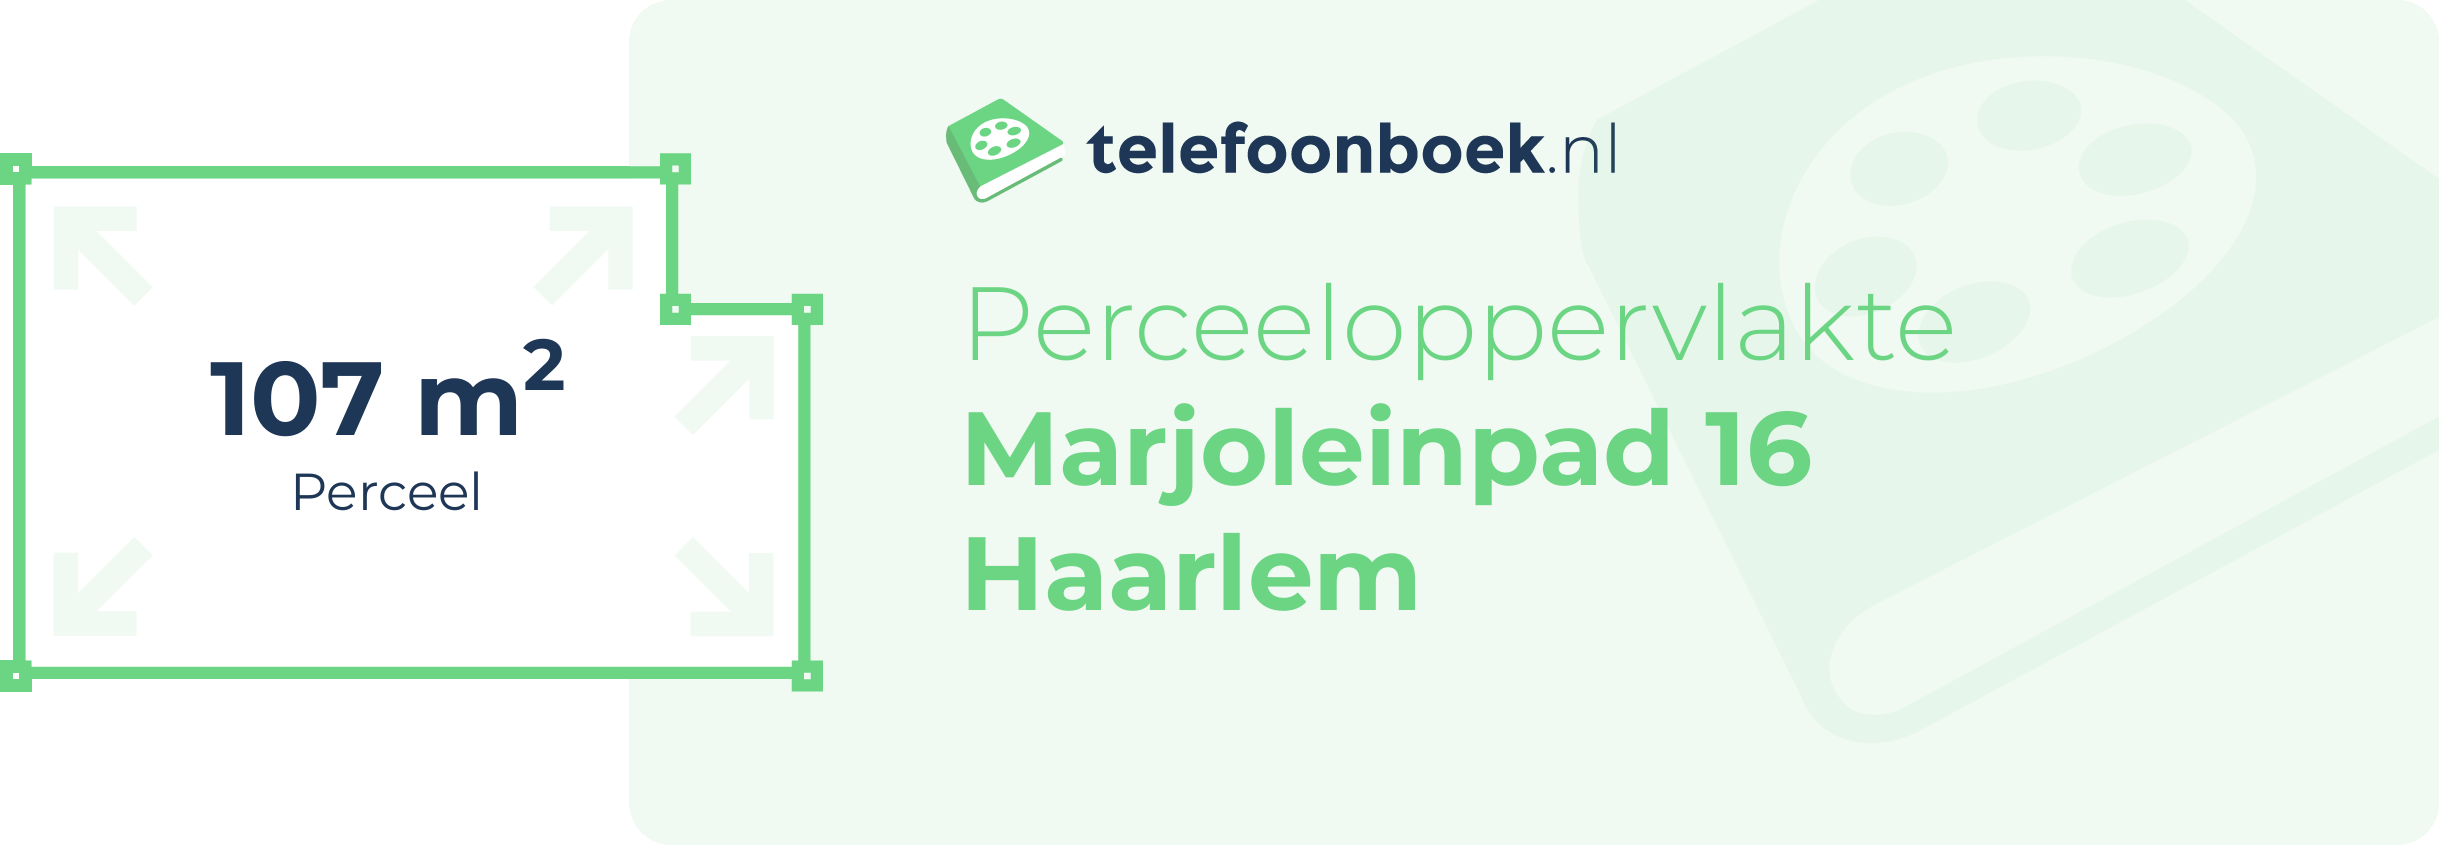 Perceeloppervlakte Marjoleinpad 16 Haarlem